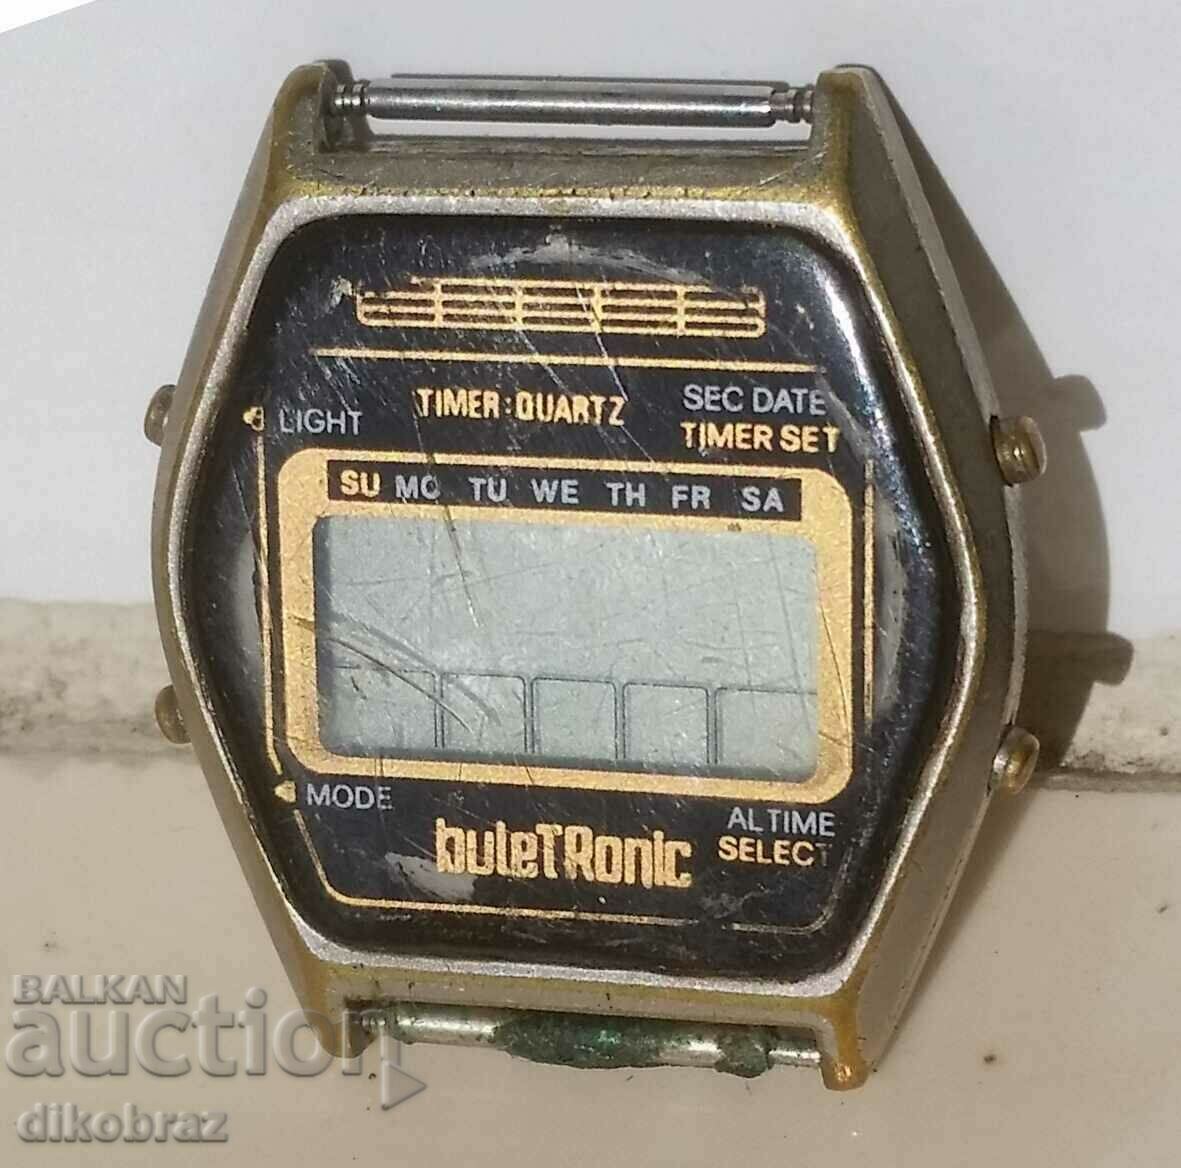 Buletronic Buletronic 14 congress DKMS wristwatch 1982